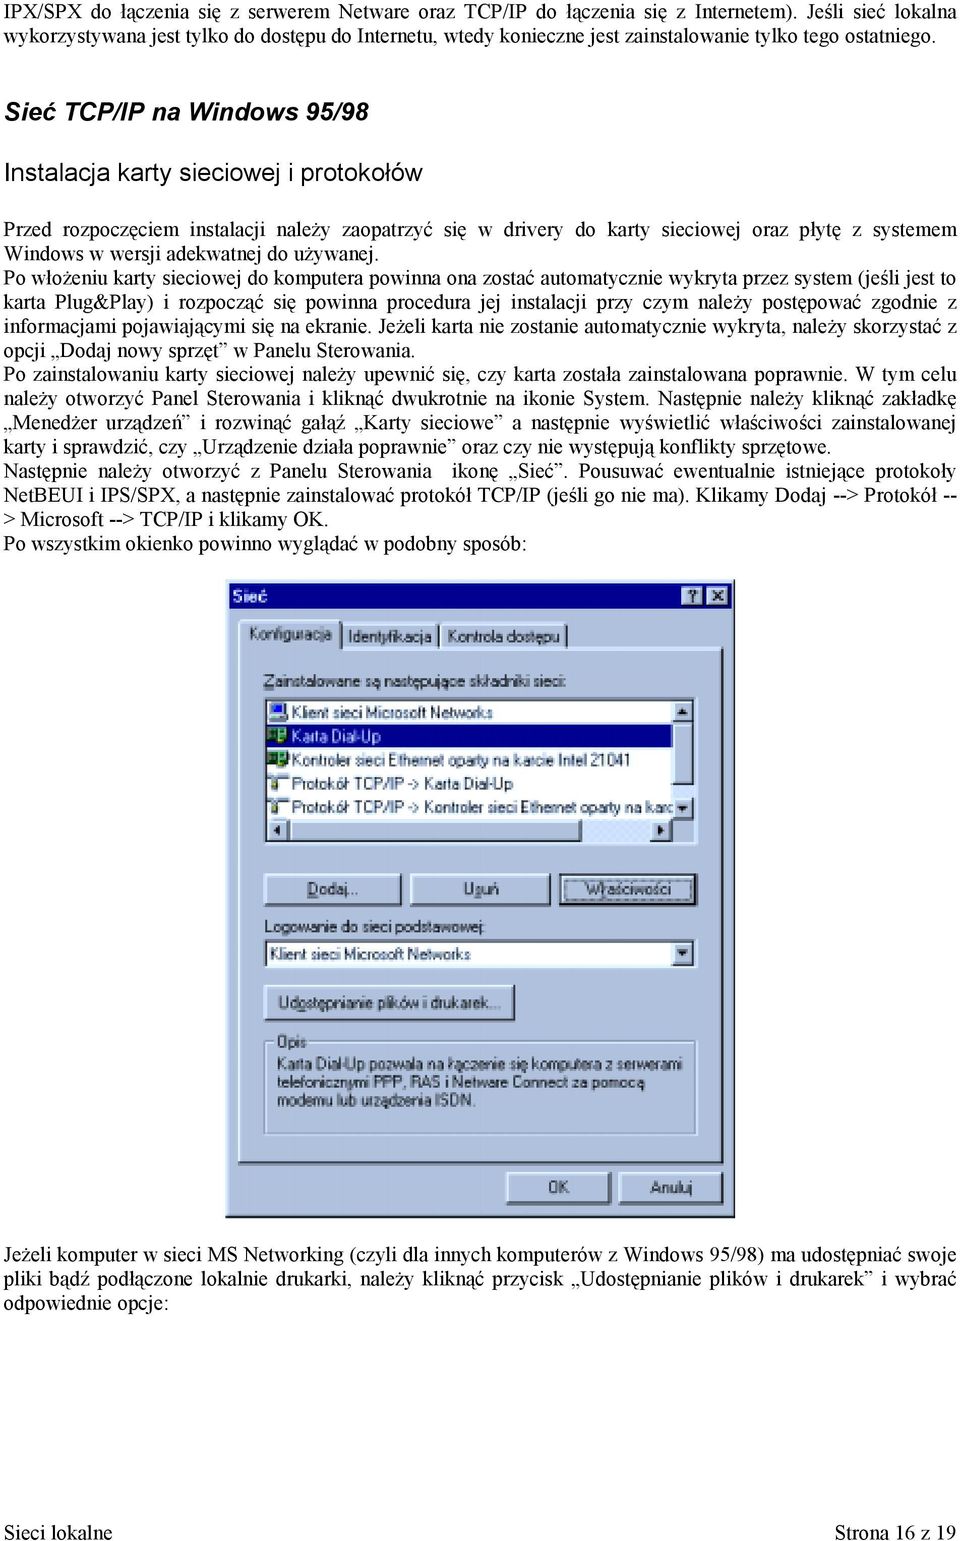 Sieć TCP/IP na Windows 95/98 Instalacja karty sieciowej i protokołów Przed rozpoczęciem instalacji należy zaopatrzyć się w drivery do karty sieciowej oraz płytę z systemem Windows w wersji adekwatnej